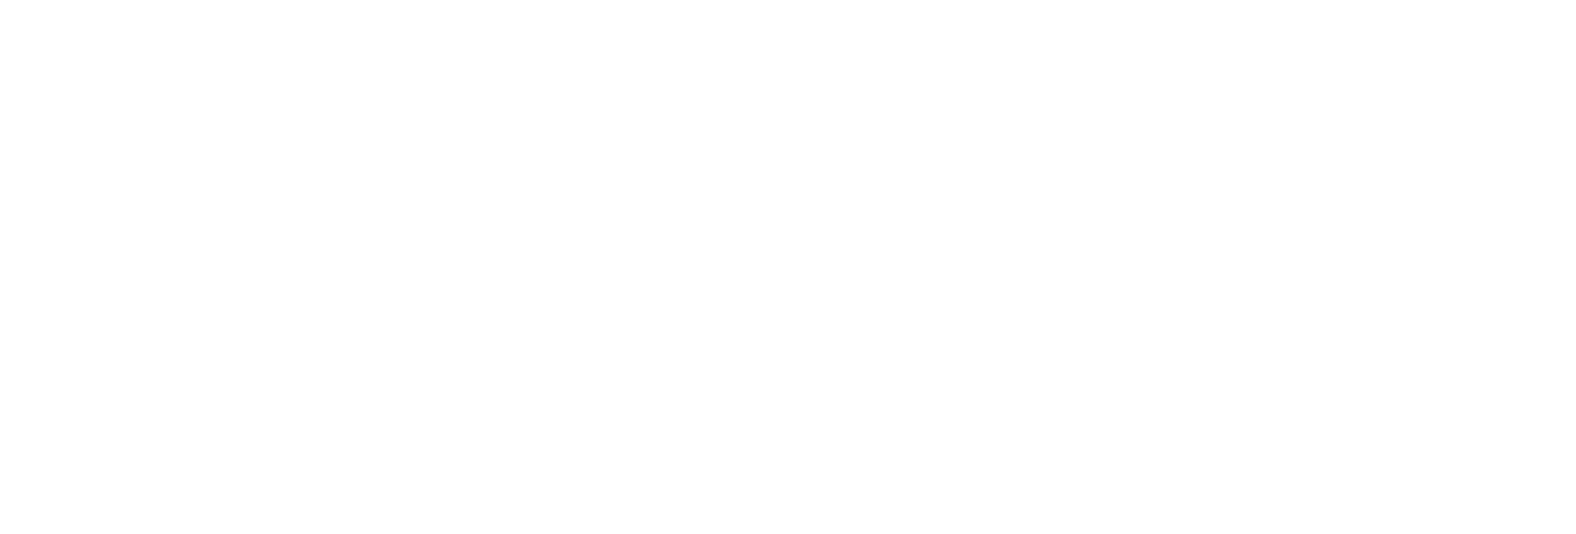 Tolmiros-Financial-Designs-Logo